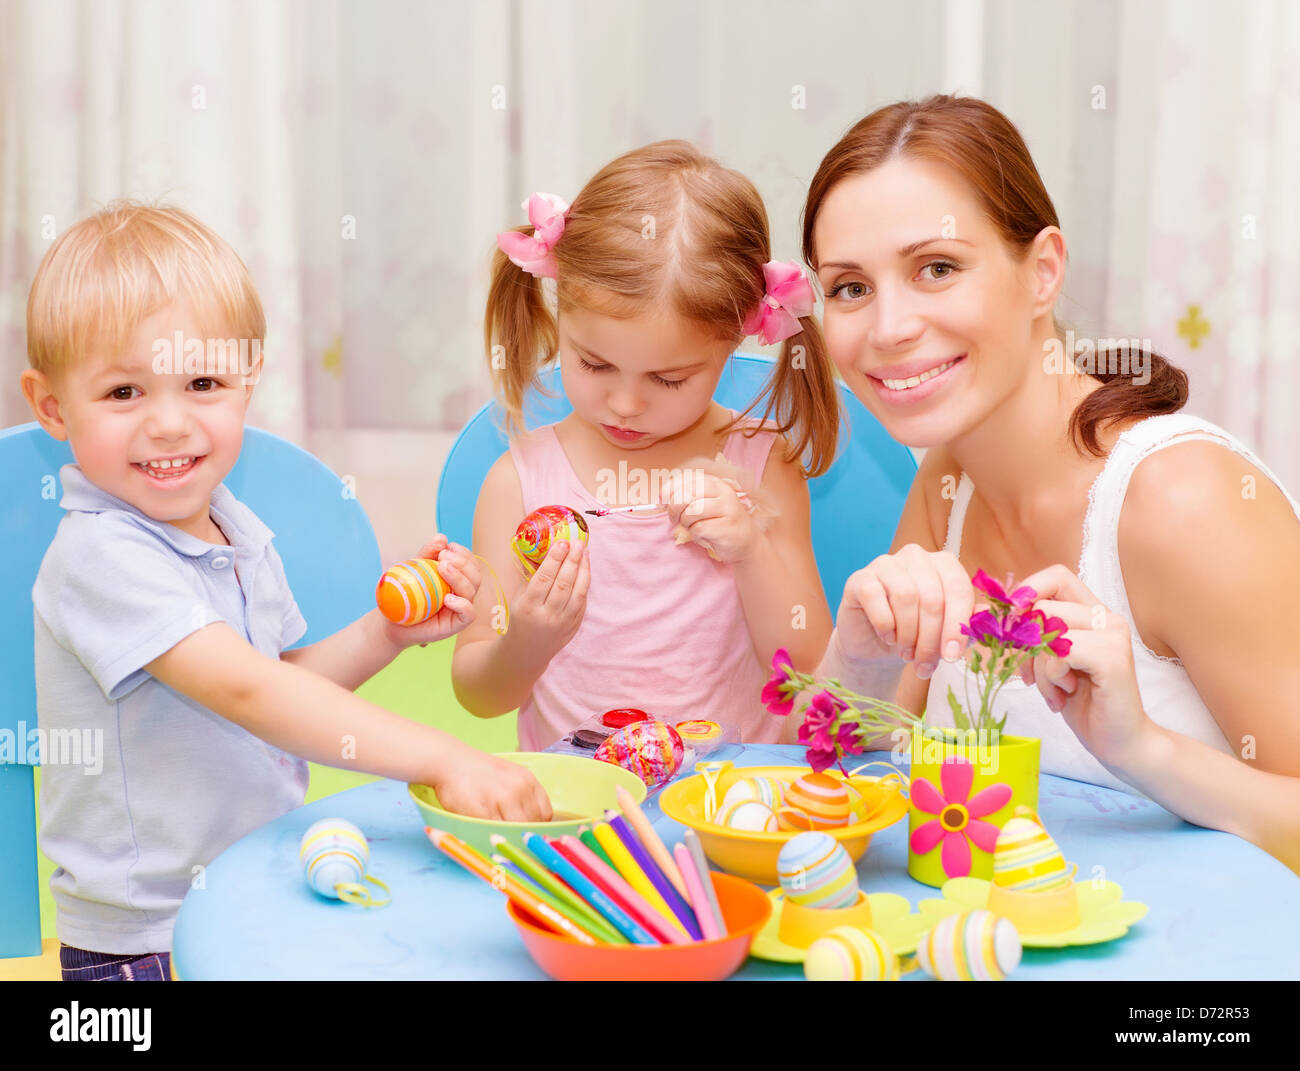 Zwei süße Kleinkind mit jungen Zeichenlehrer malen bunte Ostereier, Kunstunterricht, handgemachte festliche Dekoration Stockfoto